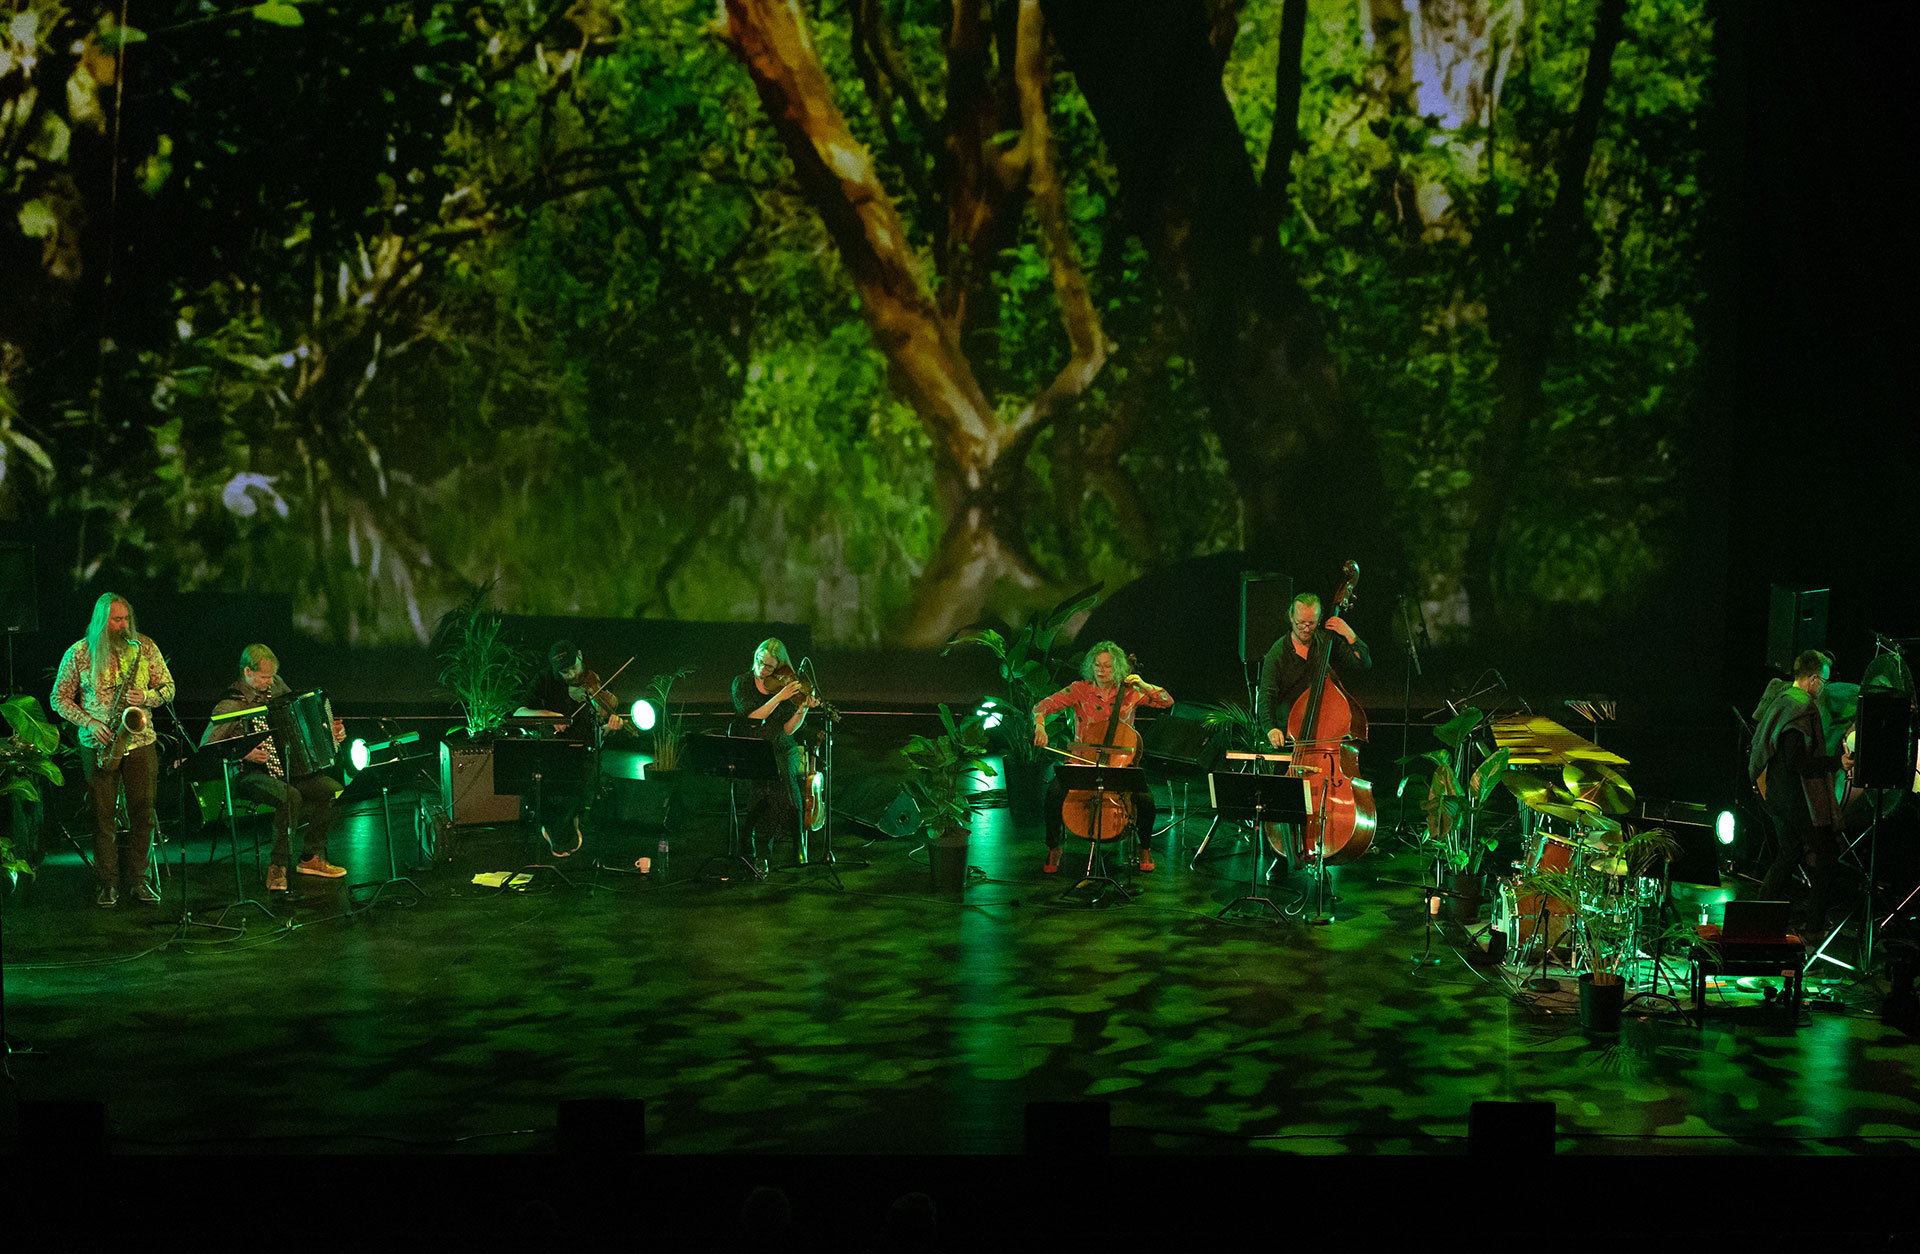 Band på scenen med grön belysning och stor bild på regnskog som fond